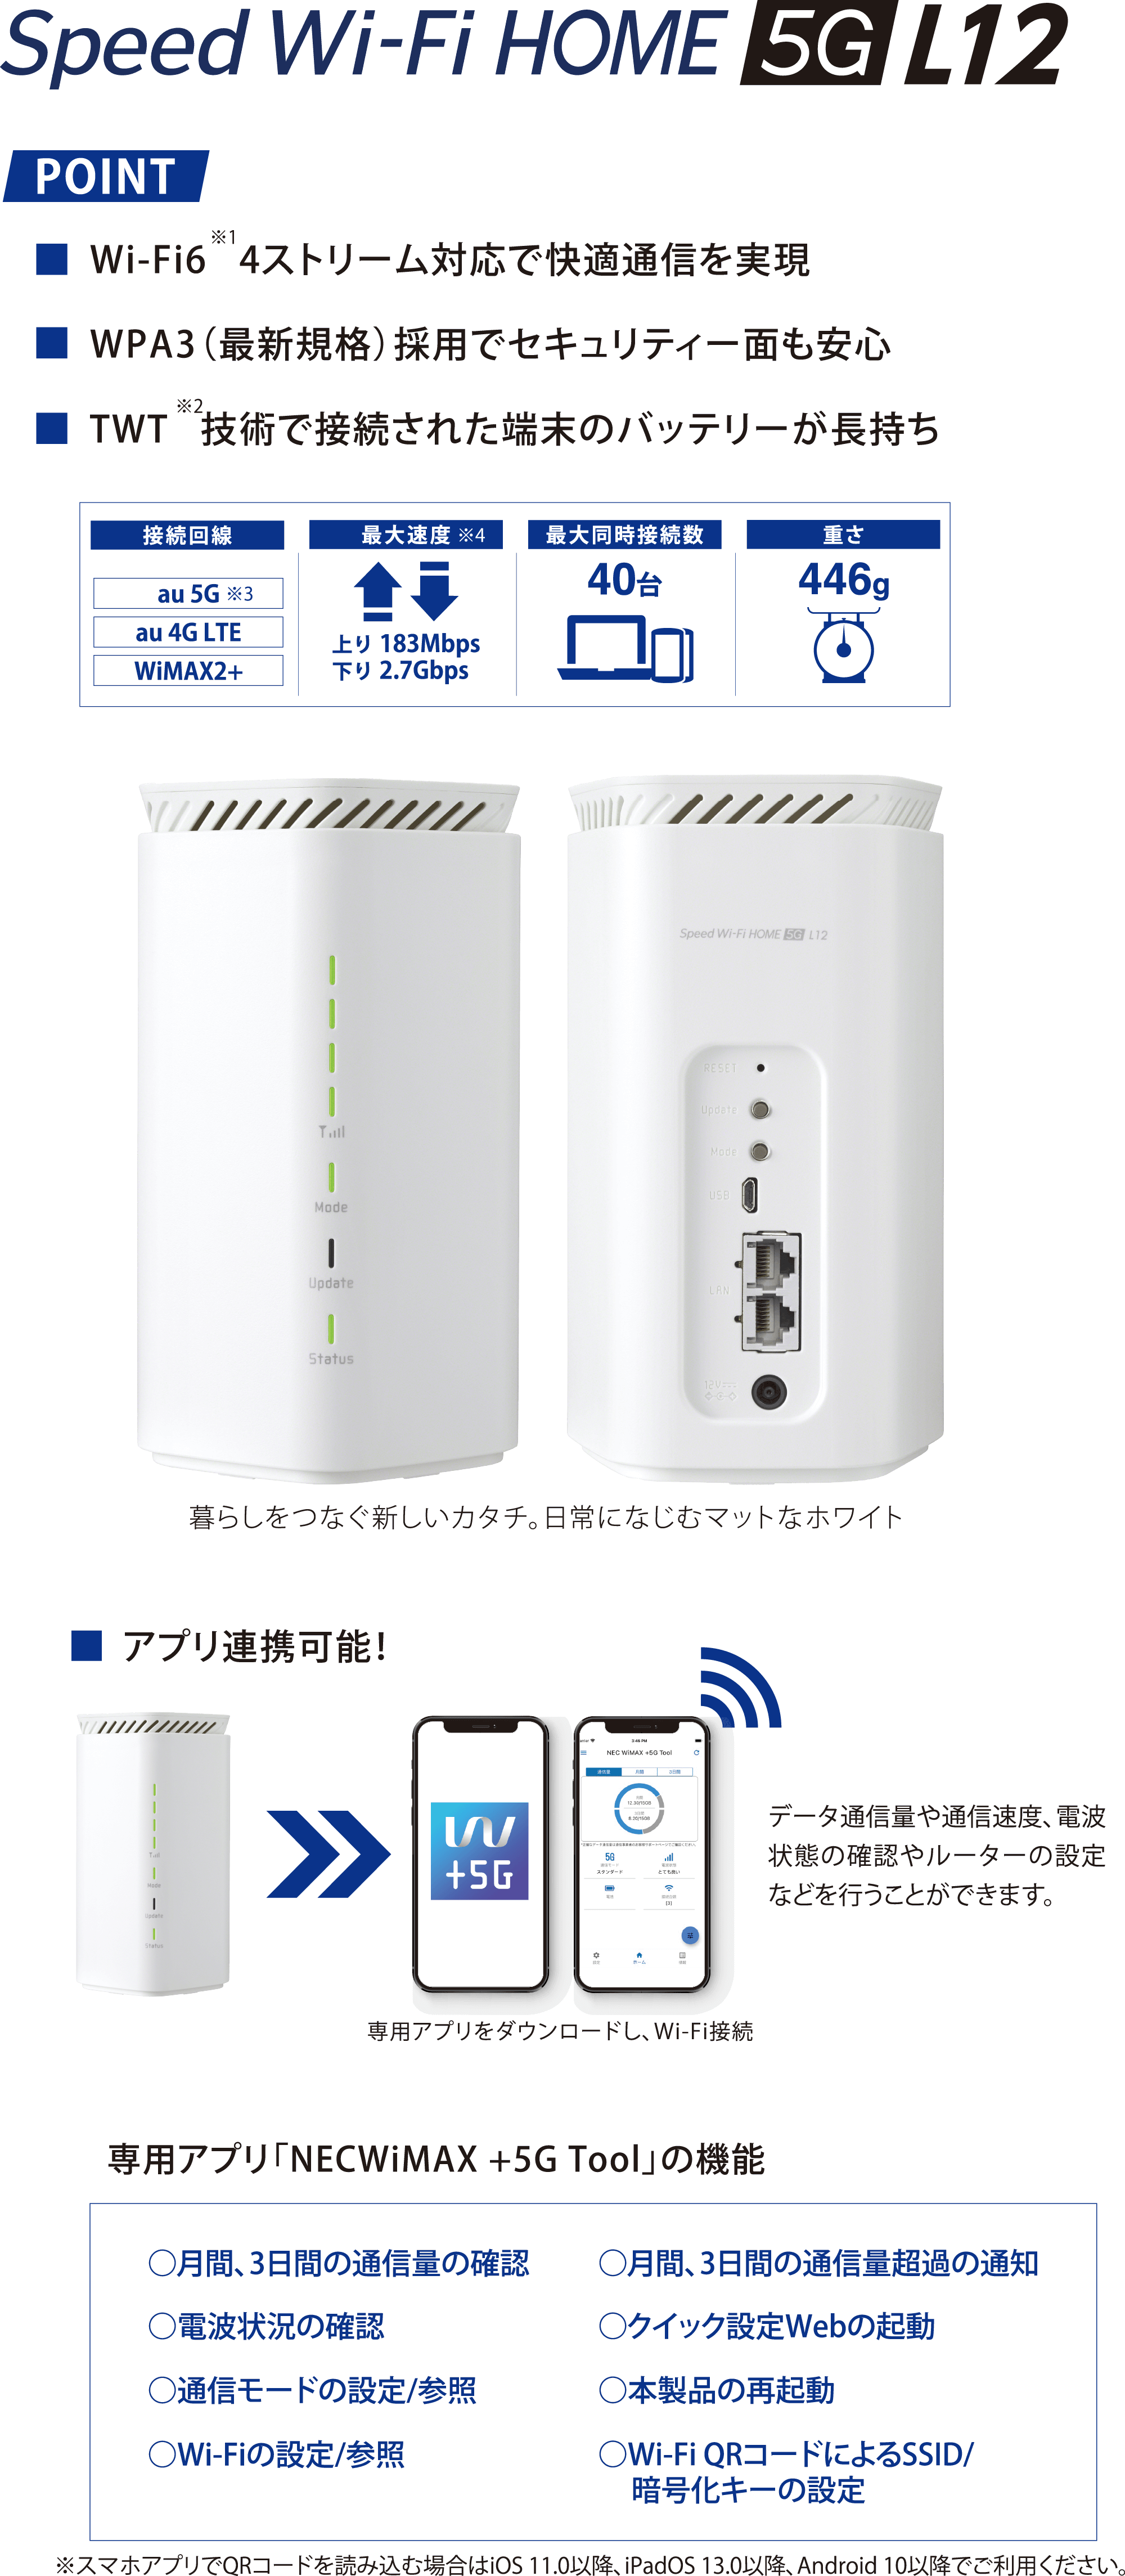 
          Speed Wi-Fi HOME 5G L12。
          ポイント：
          ・Wi-Fi6※1、4ストリーム対応で快適通信を実現
          ・WPA3（最新規格）採用でセキュリティー面も安心
          ・TWT※2、技術で接続された端末のバッテリーが長持ち

          接続回線：au 5G※3、au 4G LTE、WiMAX2+。
          最大速度※4：上り183Mbps、下り2.7Gbps。
          最大同時接続数：40台。
          重さ：446グラム。

          エックスワイマックス端末の画像が表示されています。
          暮らしをつなぐ新しいカタチ。日常になじむマットなホワイト。

          ・アプリ連携可能！
          エックスワイマックス端末とスマートフォンの専用アプリの画像が表示されています。
          データ通信量や通信速度、電波状態の確認やルーターの設定などを行うことができます。
          専用アプリをダウンロードし、Wi-Fi接続。

          専用アプリ「ネックワイマックス+5Gツール」の機能：
          ・月間、3日間の通信量を確認　・月間、3日間の通信量超過の通知
          ・電波状態の確認　・クイック設定Webの起動
          ・通信モードの設定／参照　・本製品の再起動
          ・Wi-Fiの設定／参照　・Wi-Fi QRコードによるSSID／暗号化キーの設定
          ※スマホアプリでQRコードを読み込む場合はiOS 11.0以降、iPadOS 13.0以降、Android 10以降でご利用ください。
        